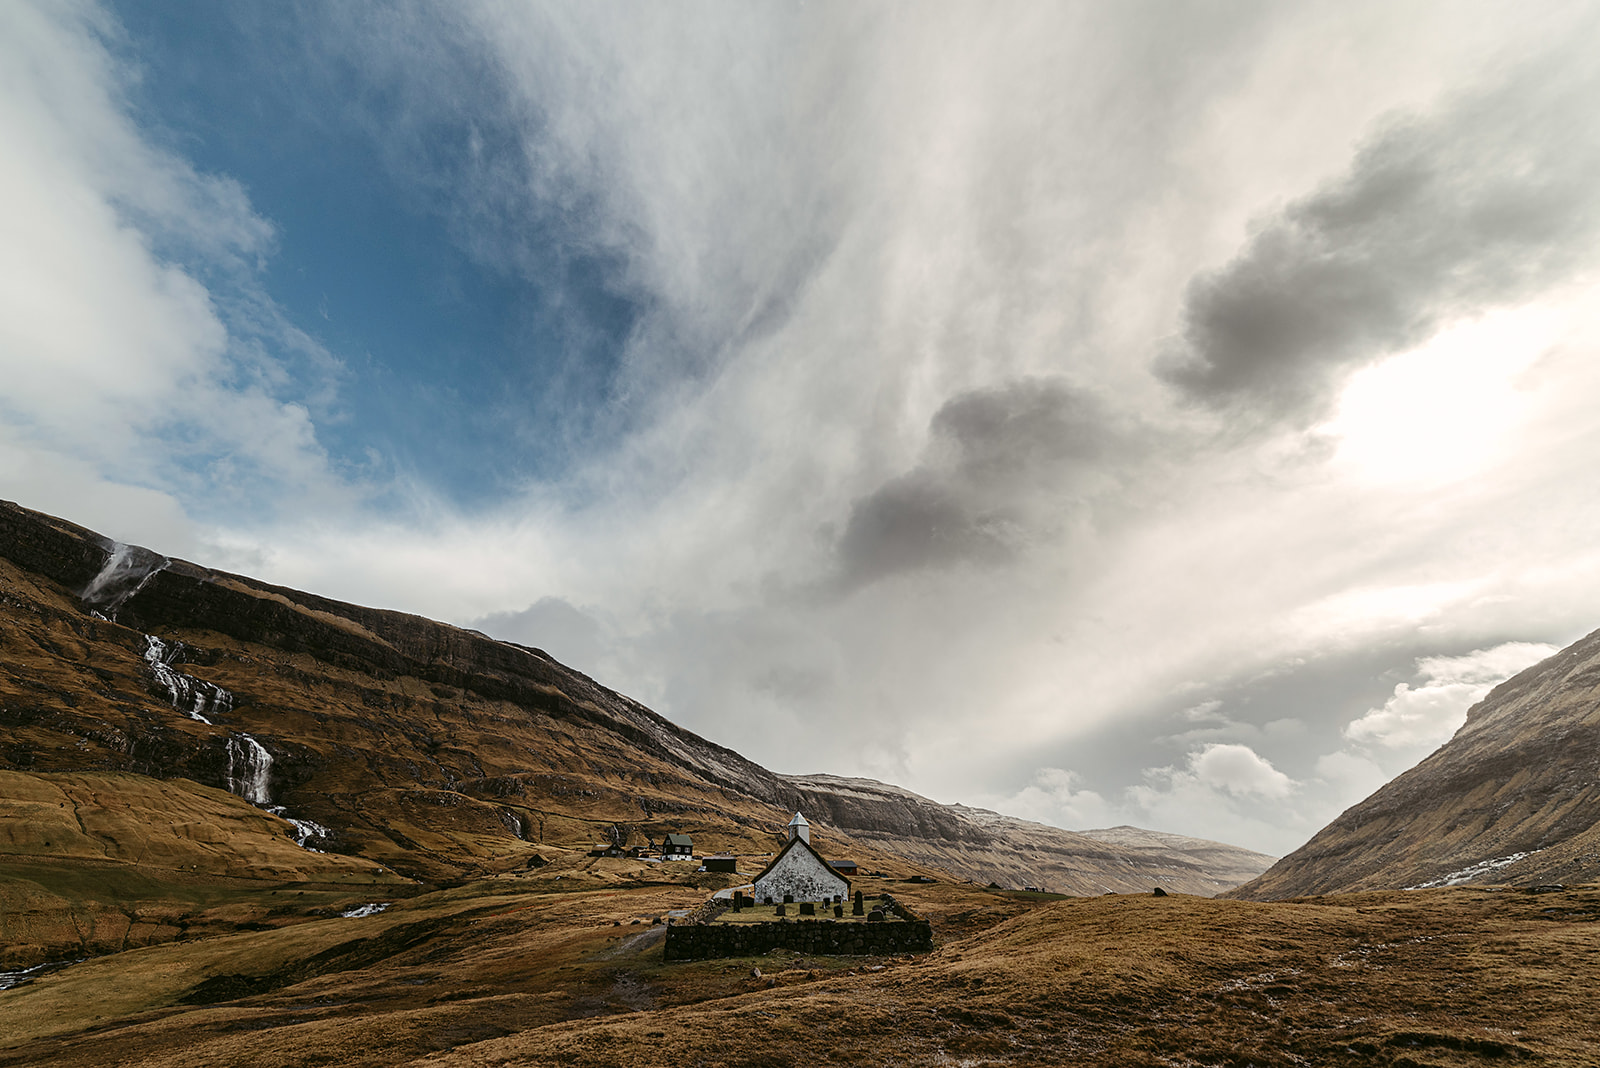 Small white church in remote mountainous landscape